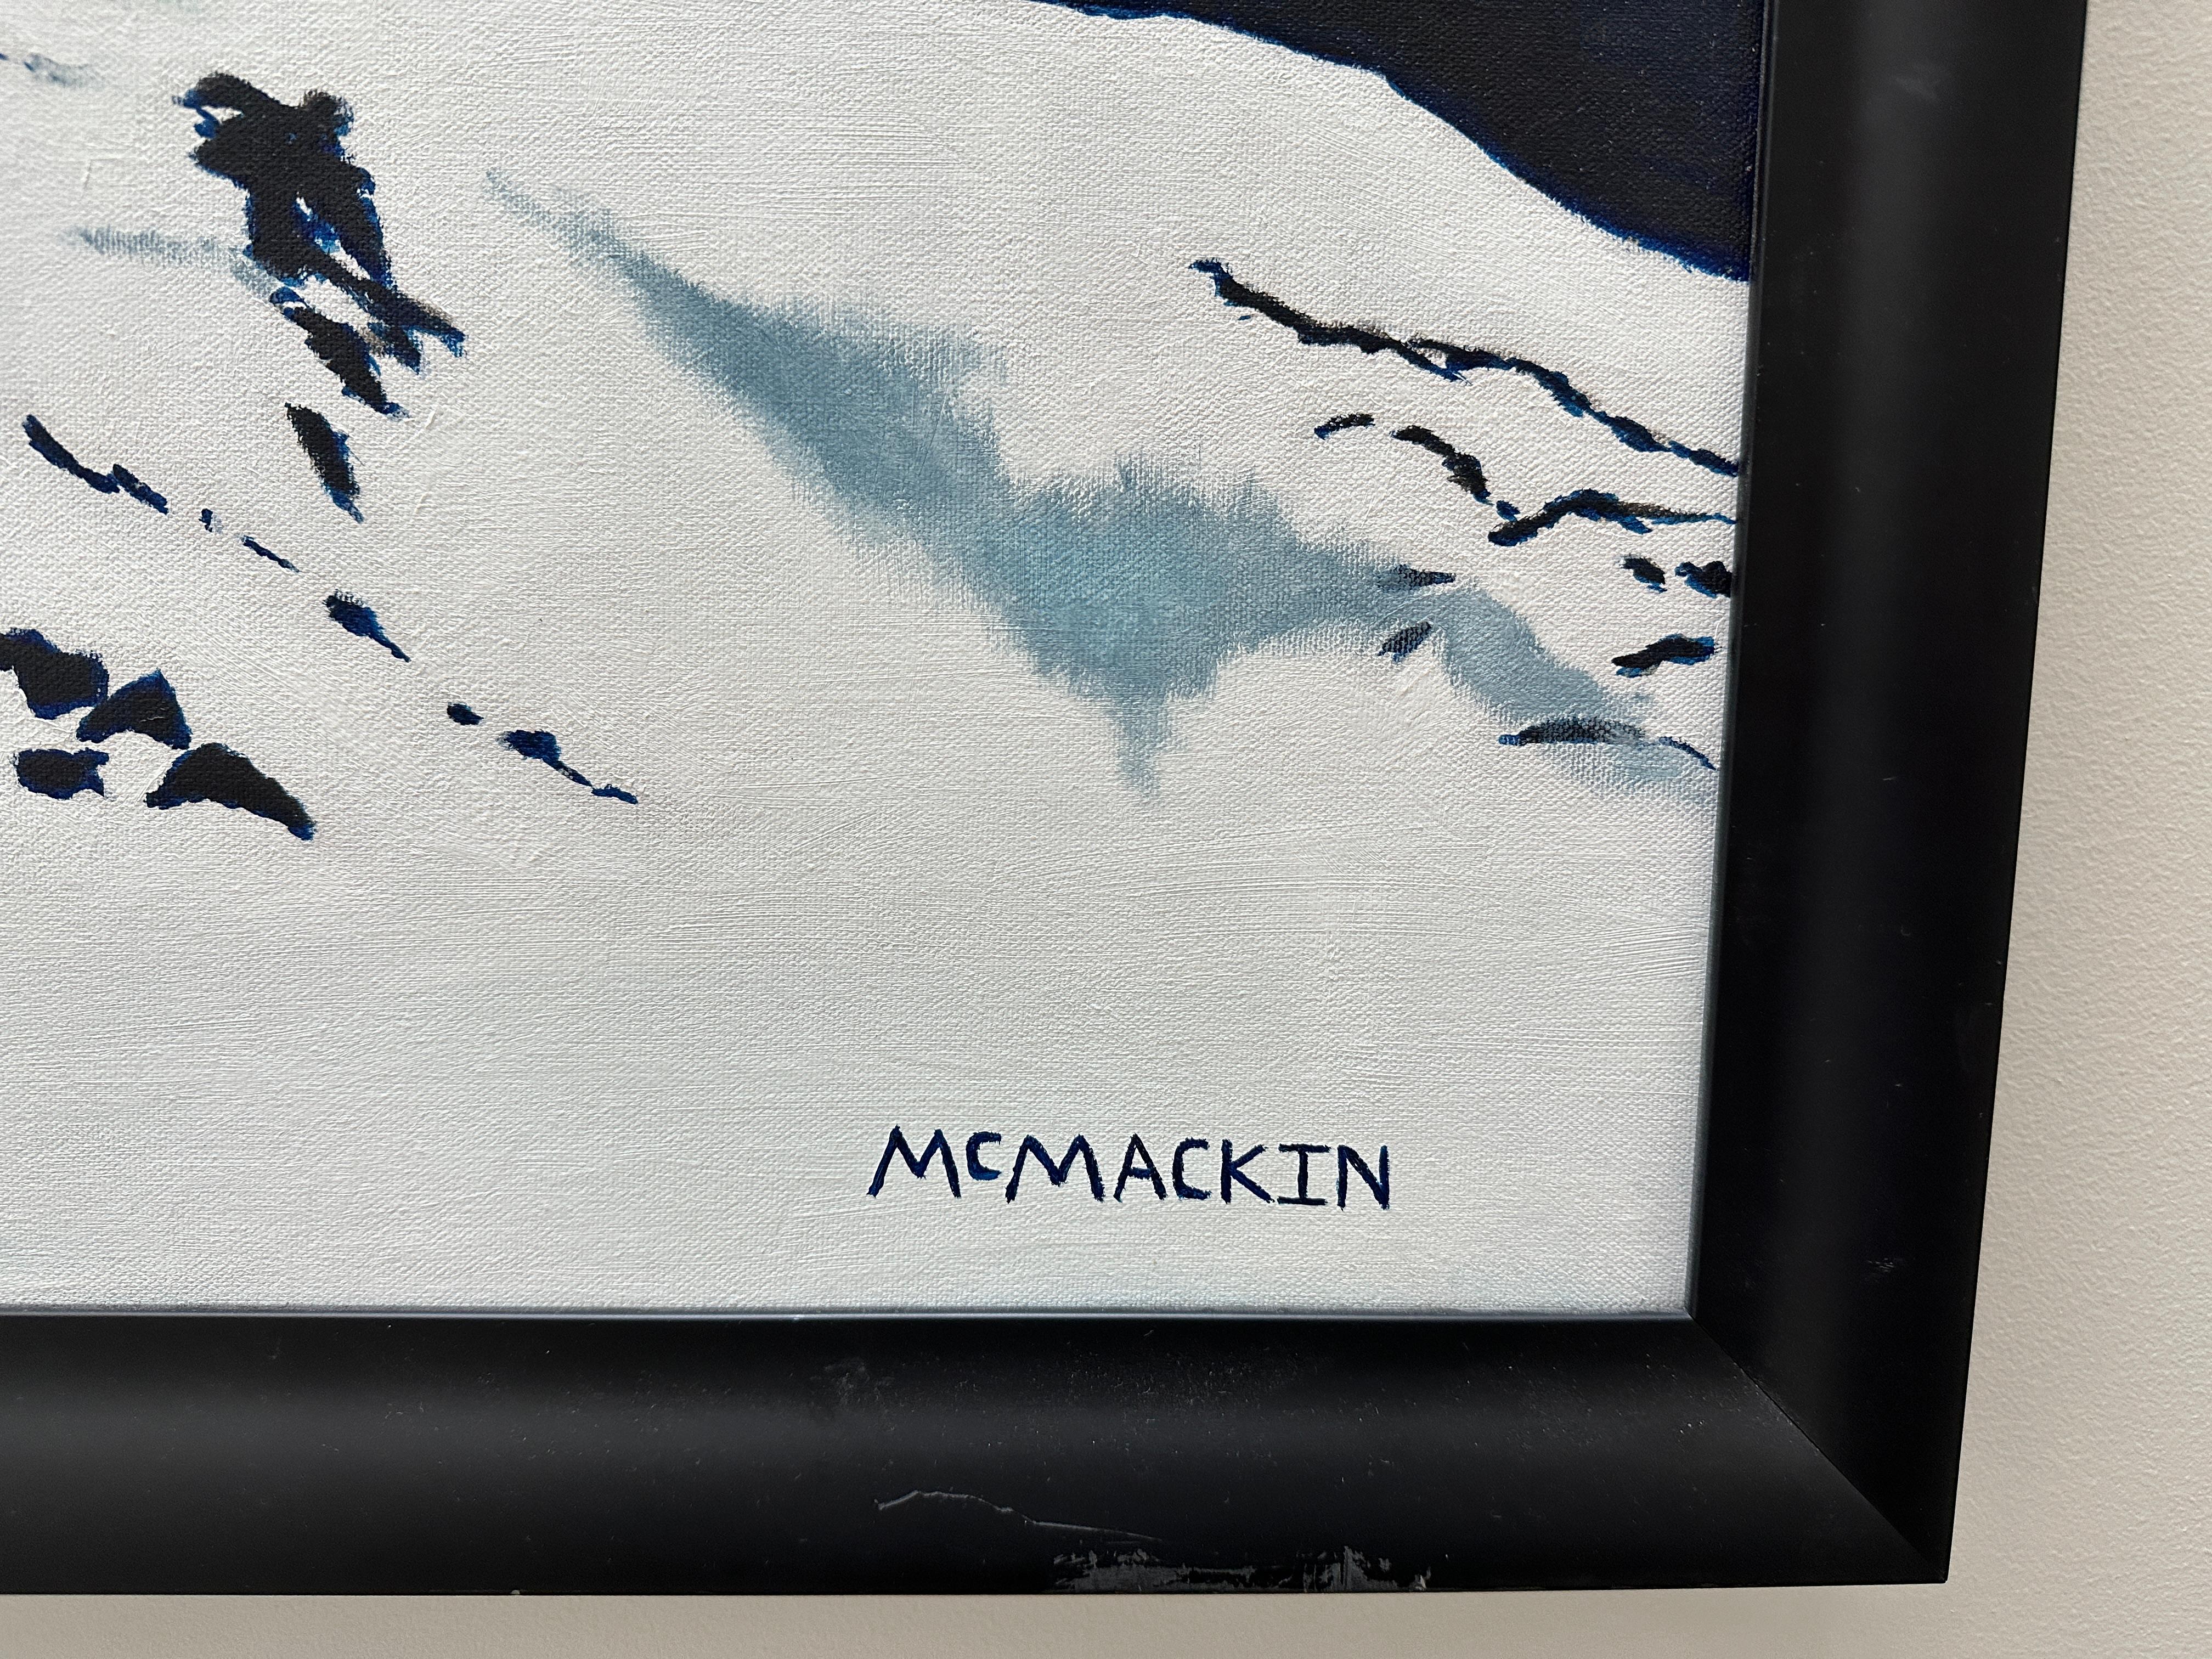 Dies ist keine der weit verbreiteten Reproduktionen von McMackin.  Dies ist das eigentliche Ölgemälde des kanadischen Snowboarders. Kommt gerahmt an. Man kann dieses schöne Gemälde nicht auf einem Computerbildschirm betrachten. Im wirklichen Leben